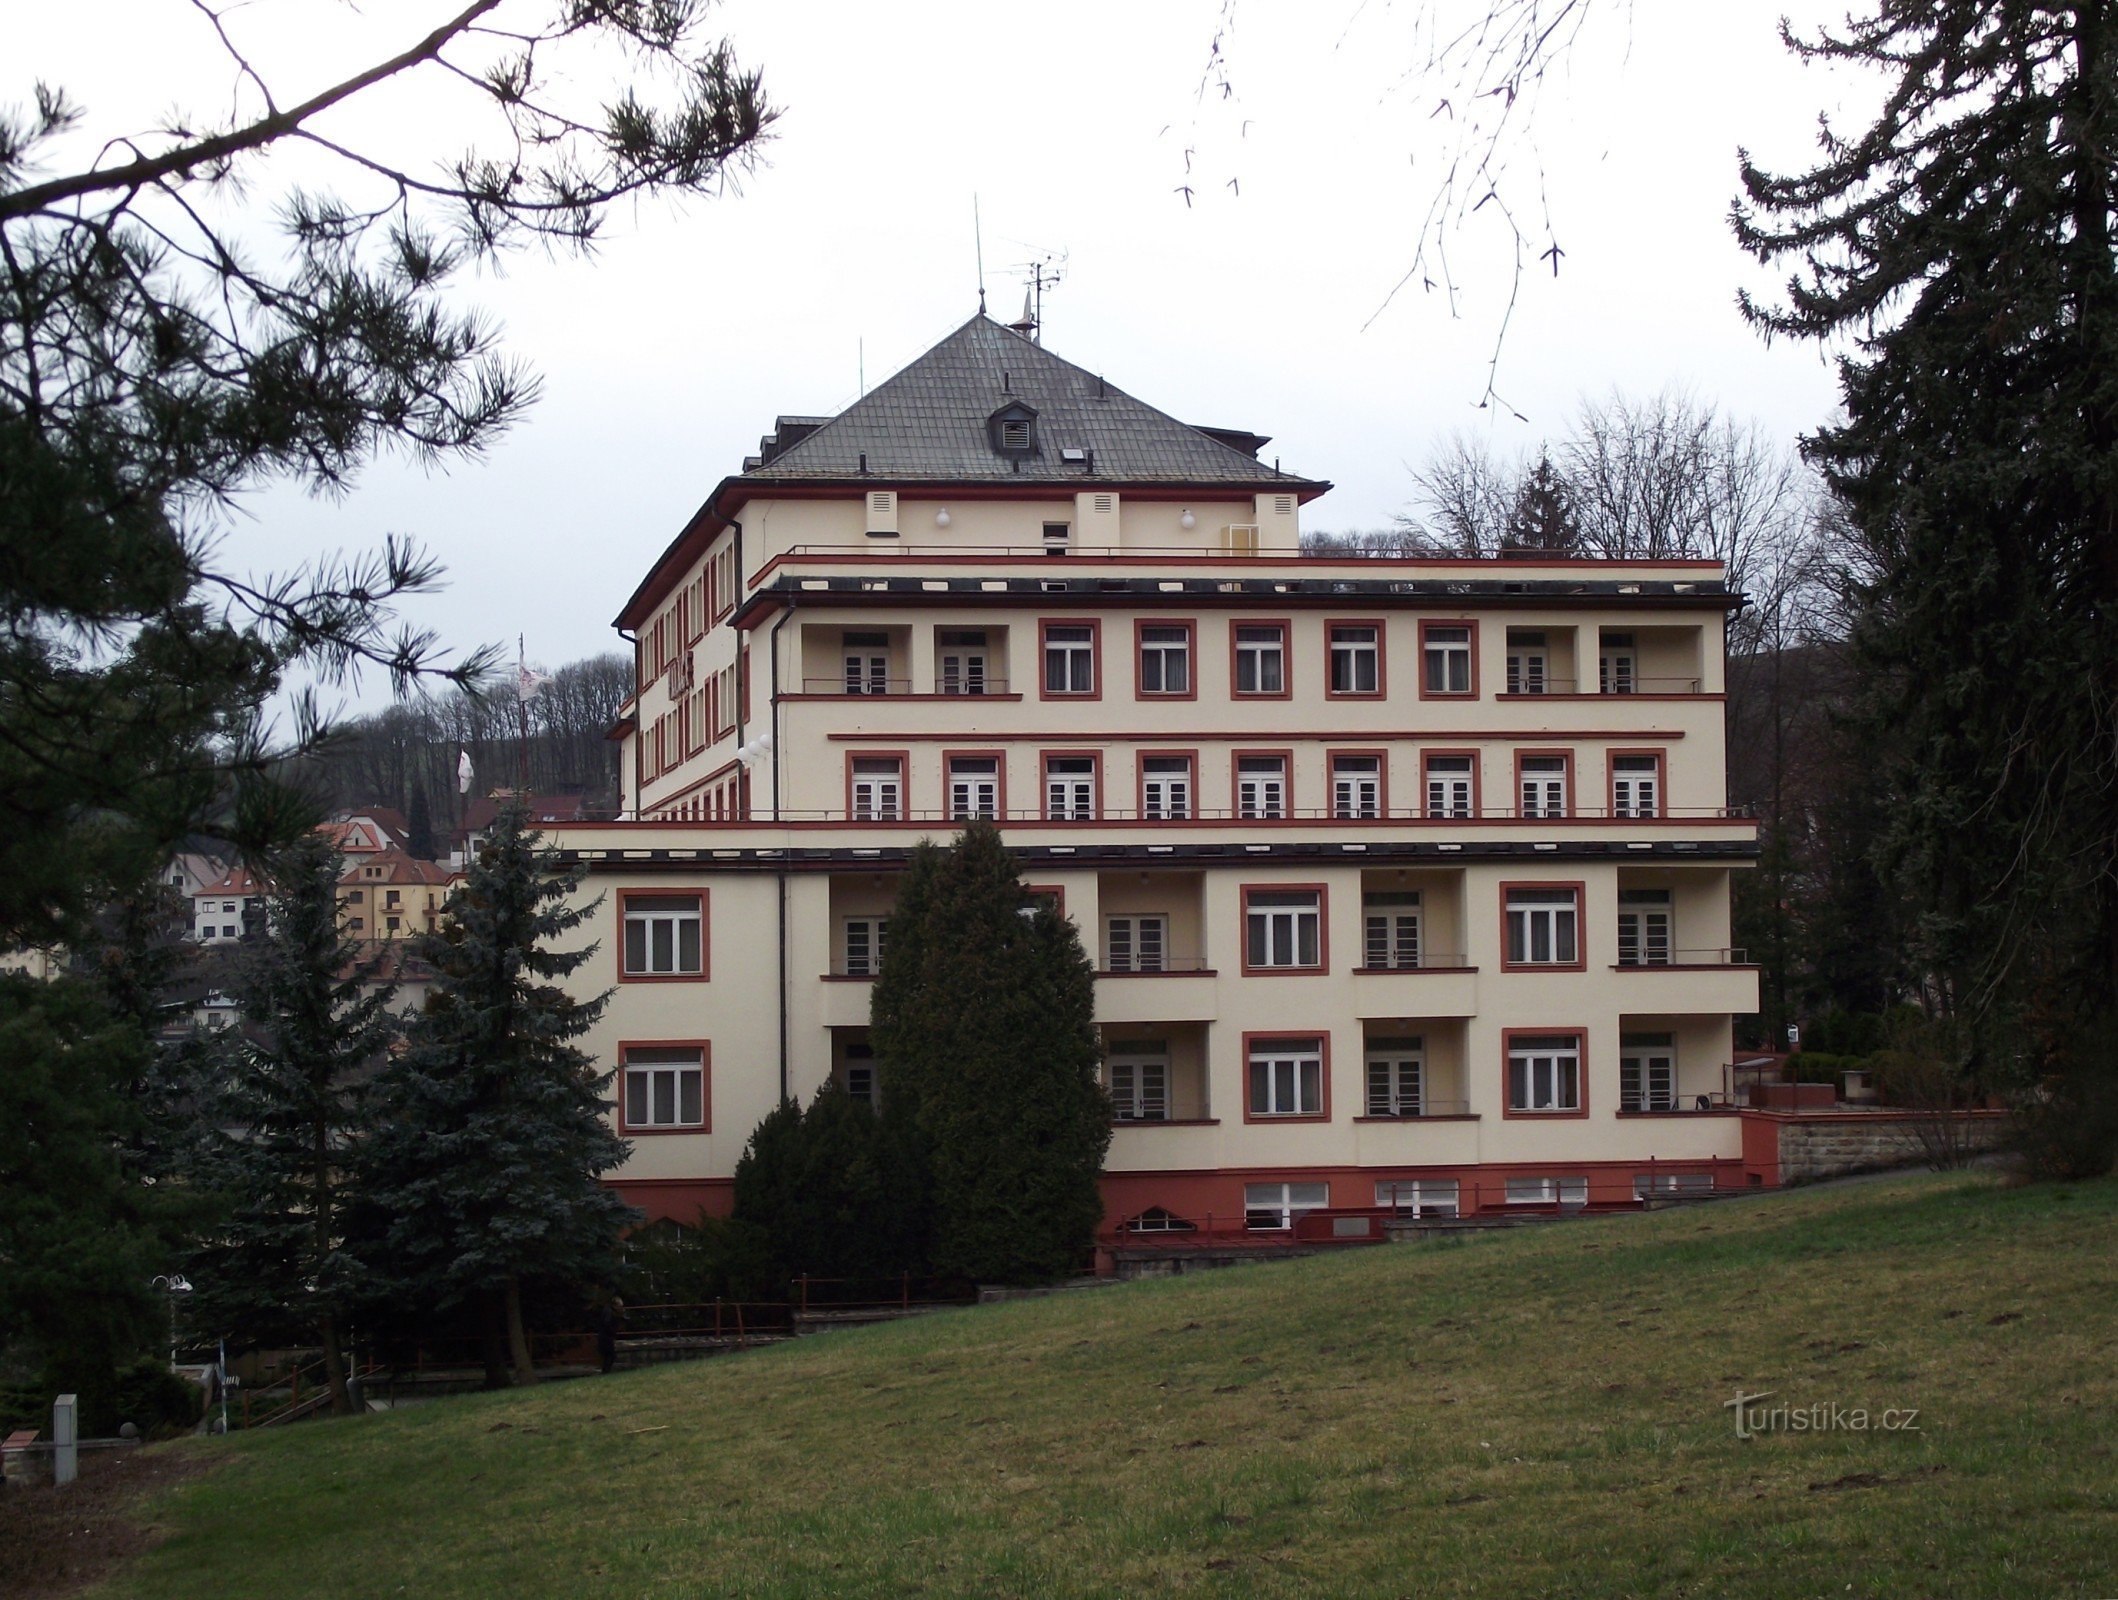 Лугачовіце – Готель Палац (Palace Hotel Drtílek)